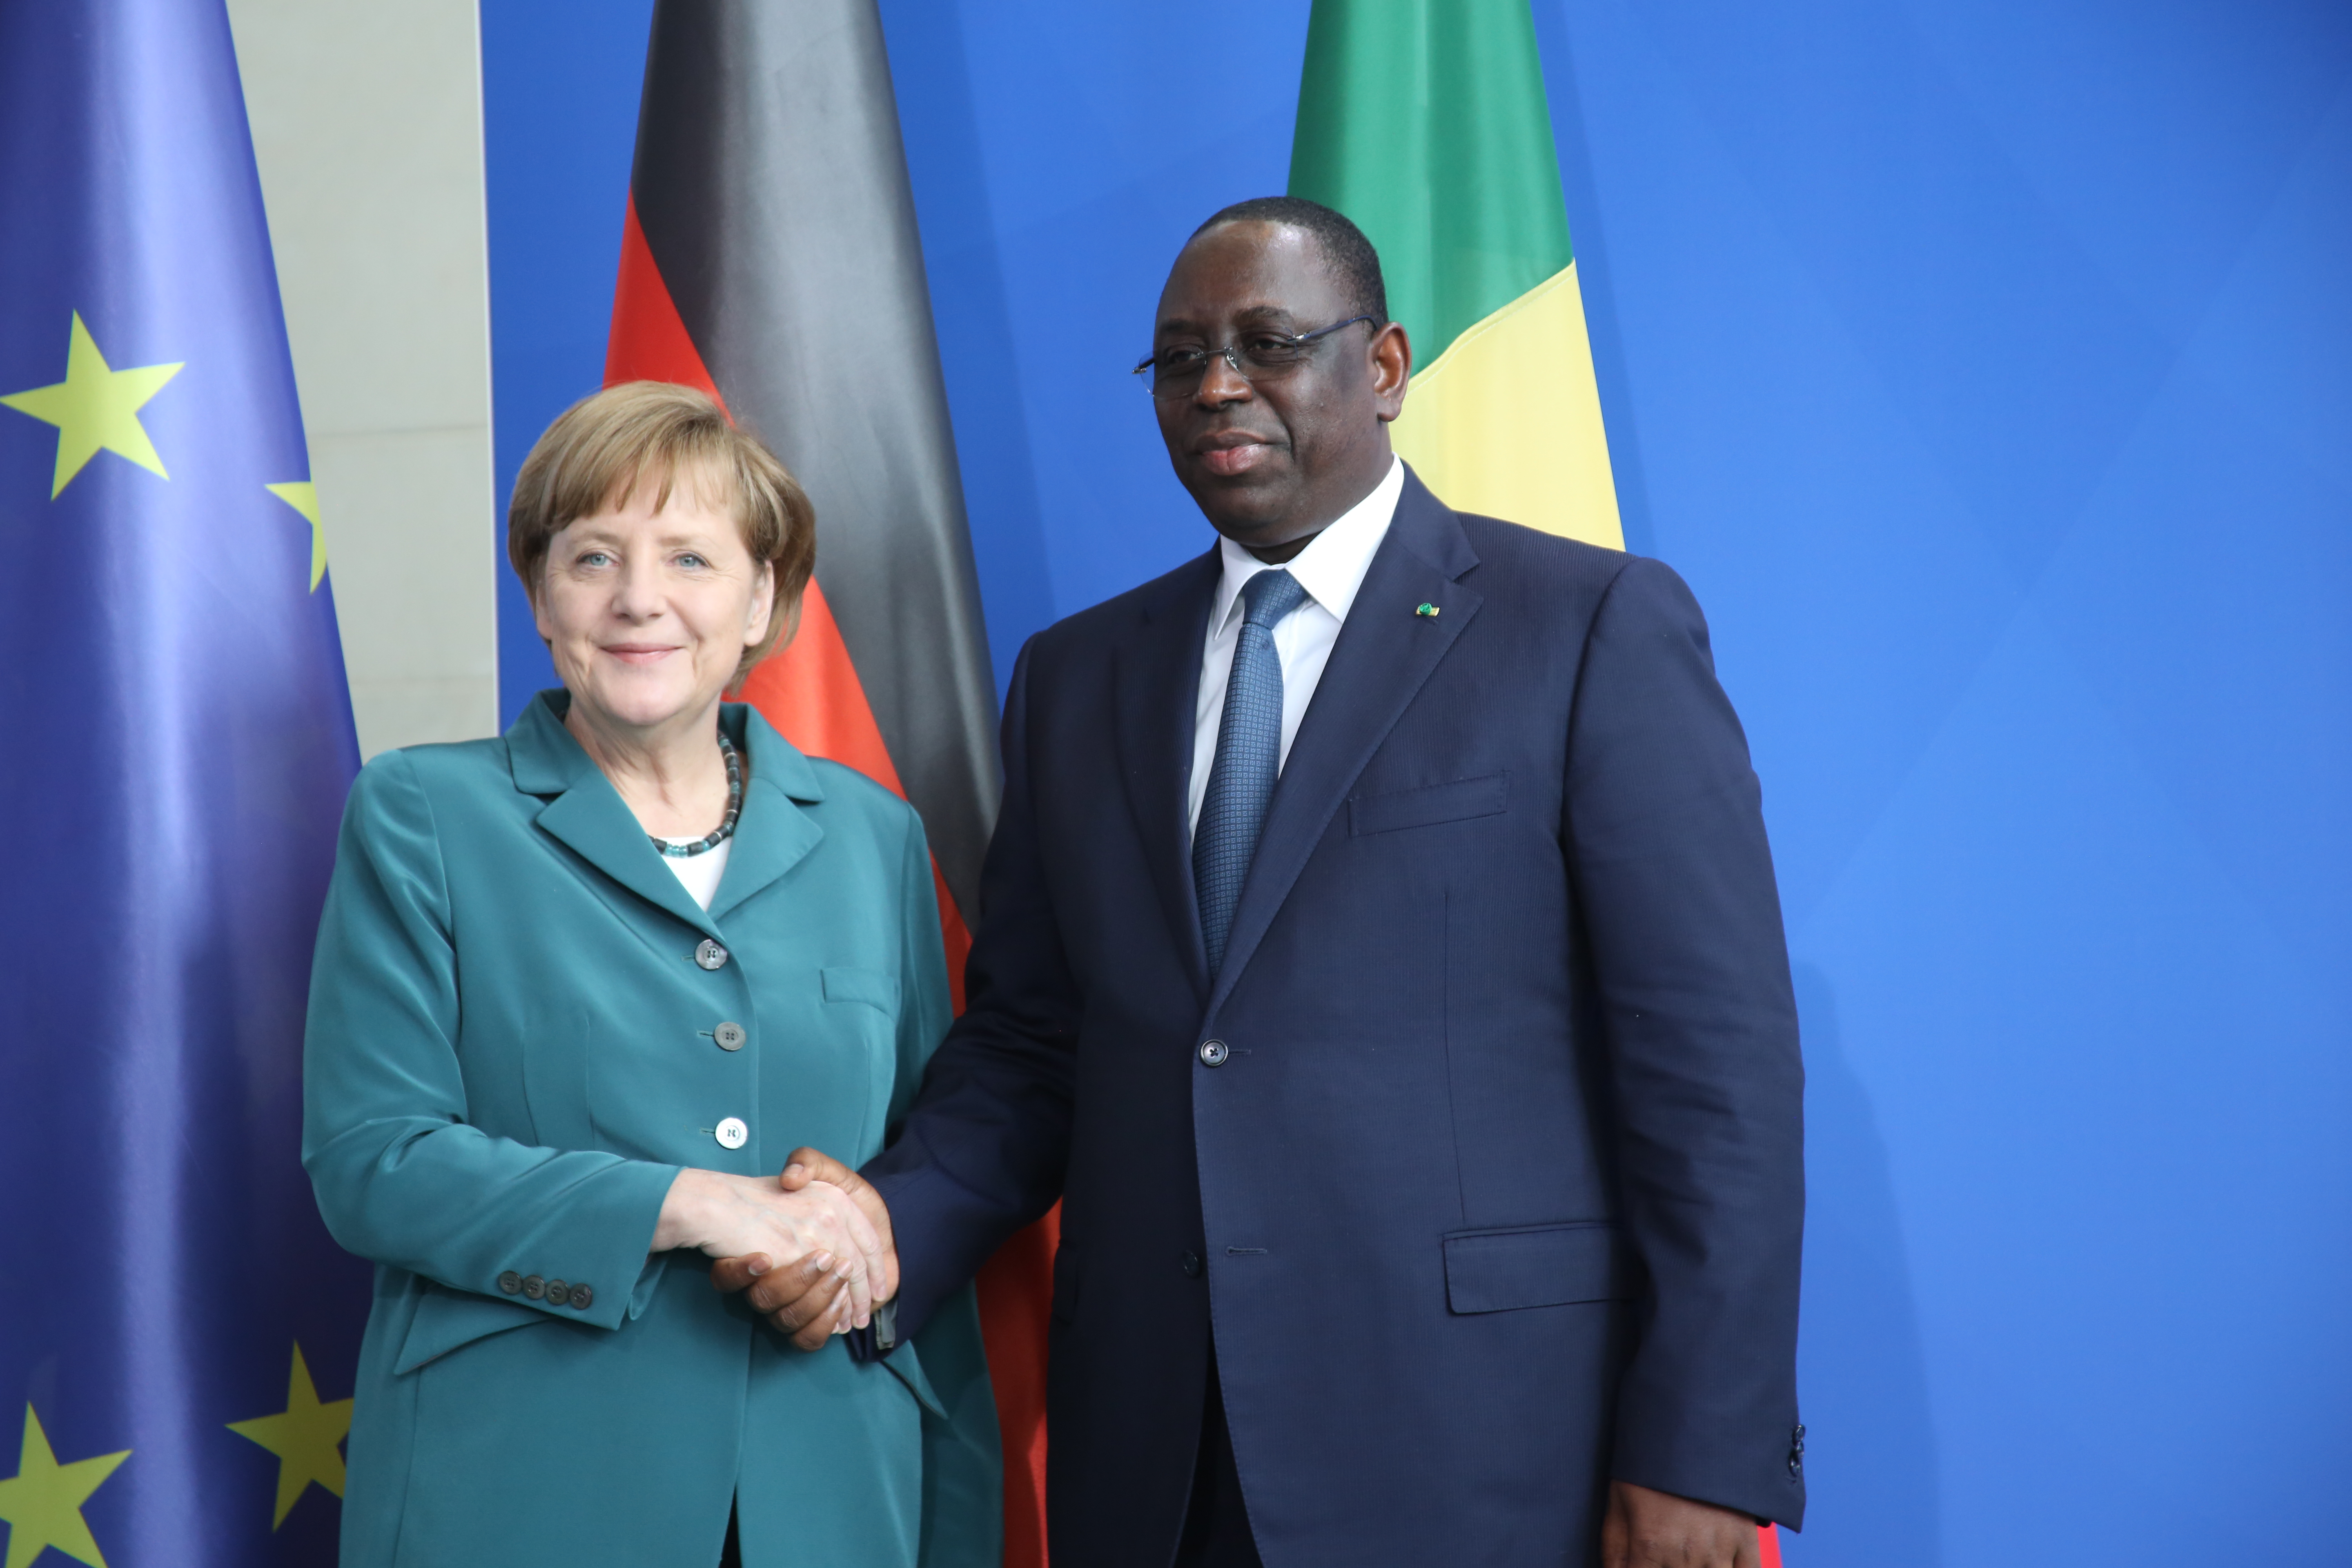 Coopération Sénégal-Allemagne: Le PSE est 'un excellent plan', selon Angela Merkel (Présidence)